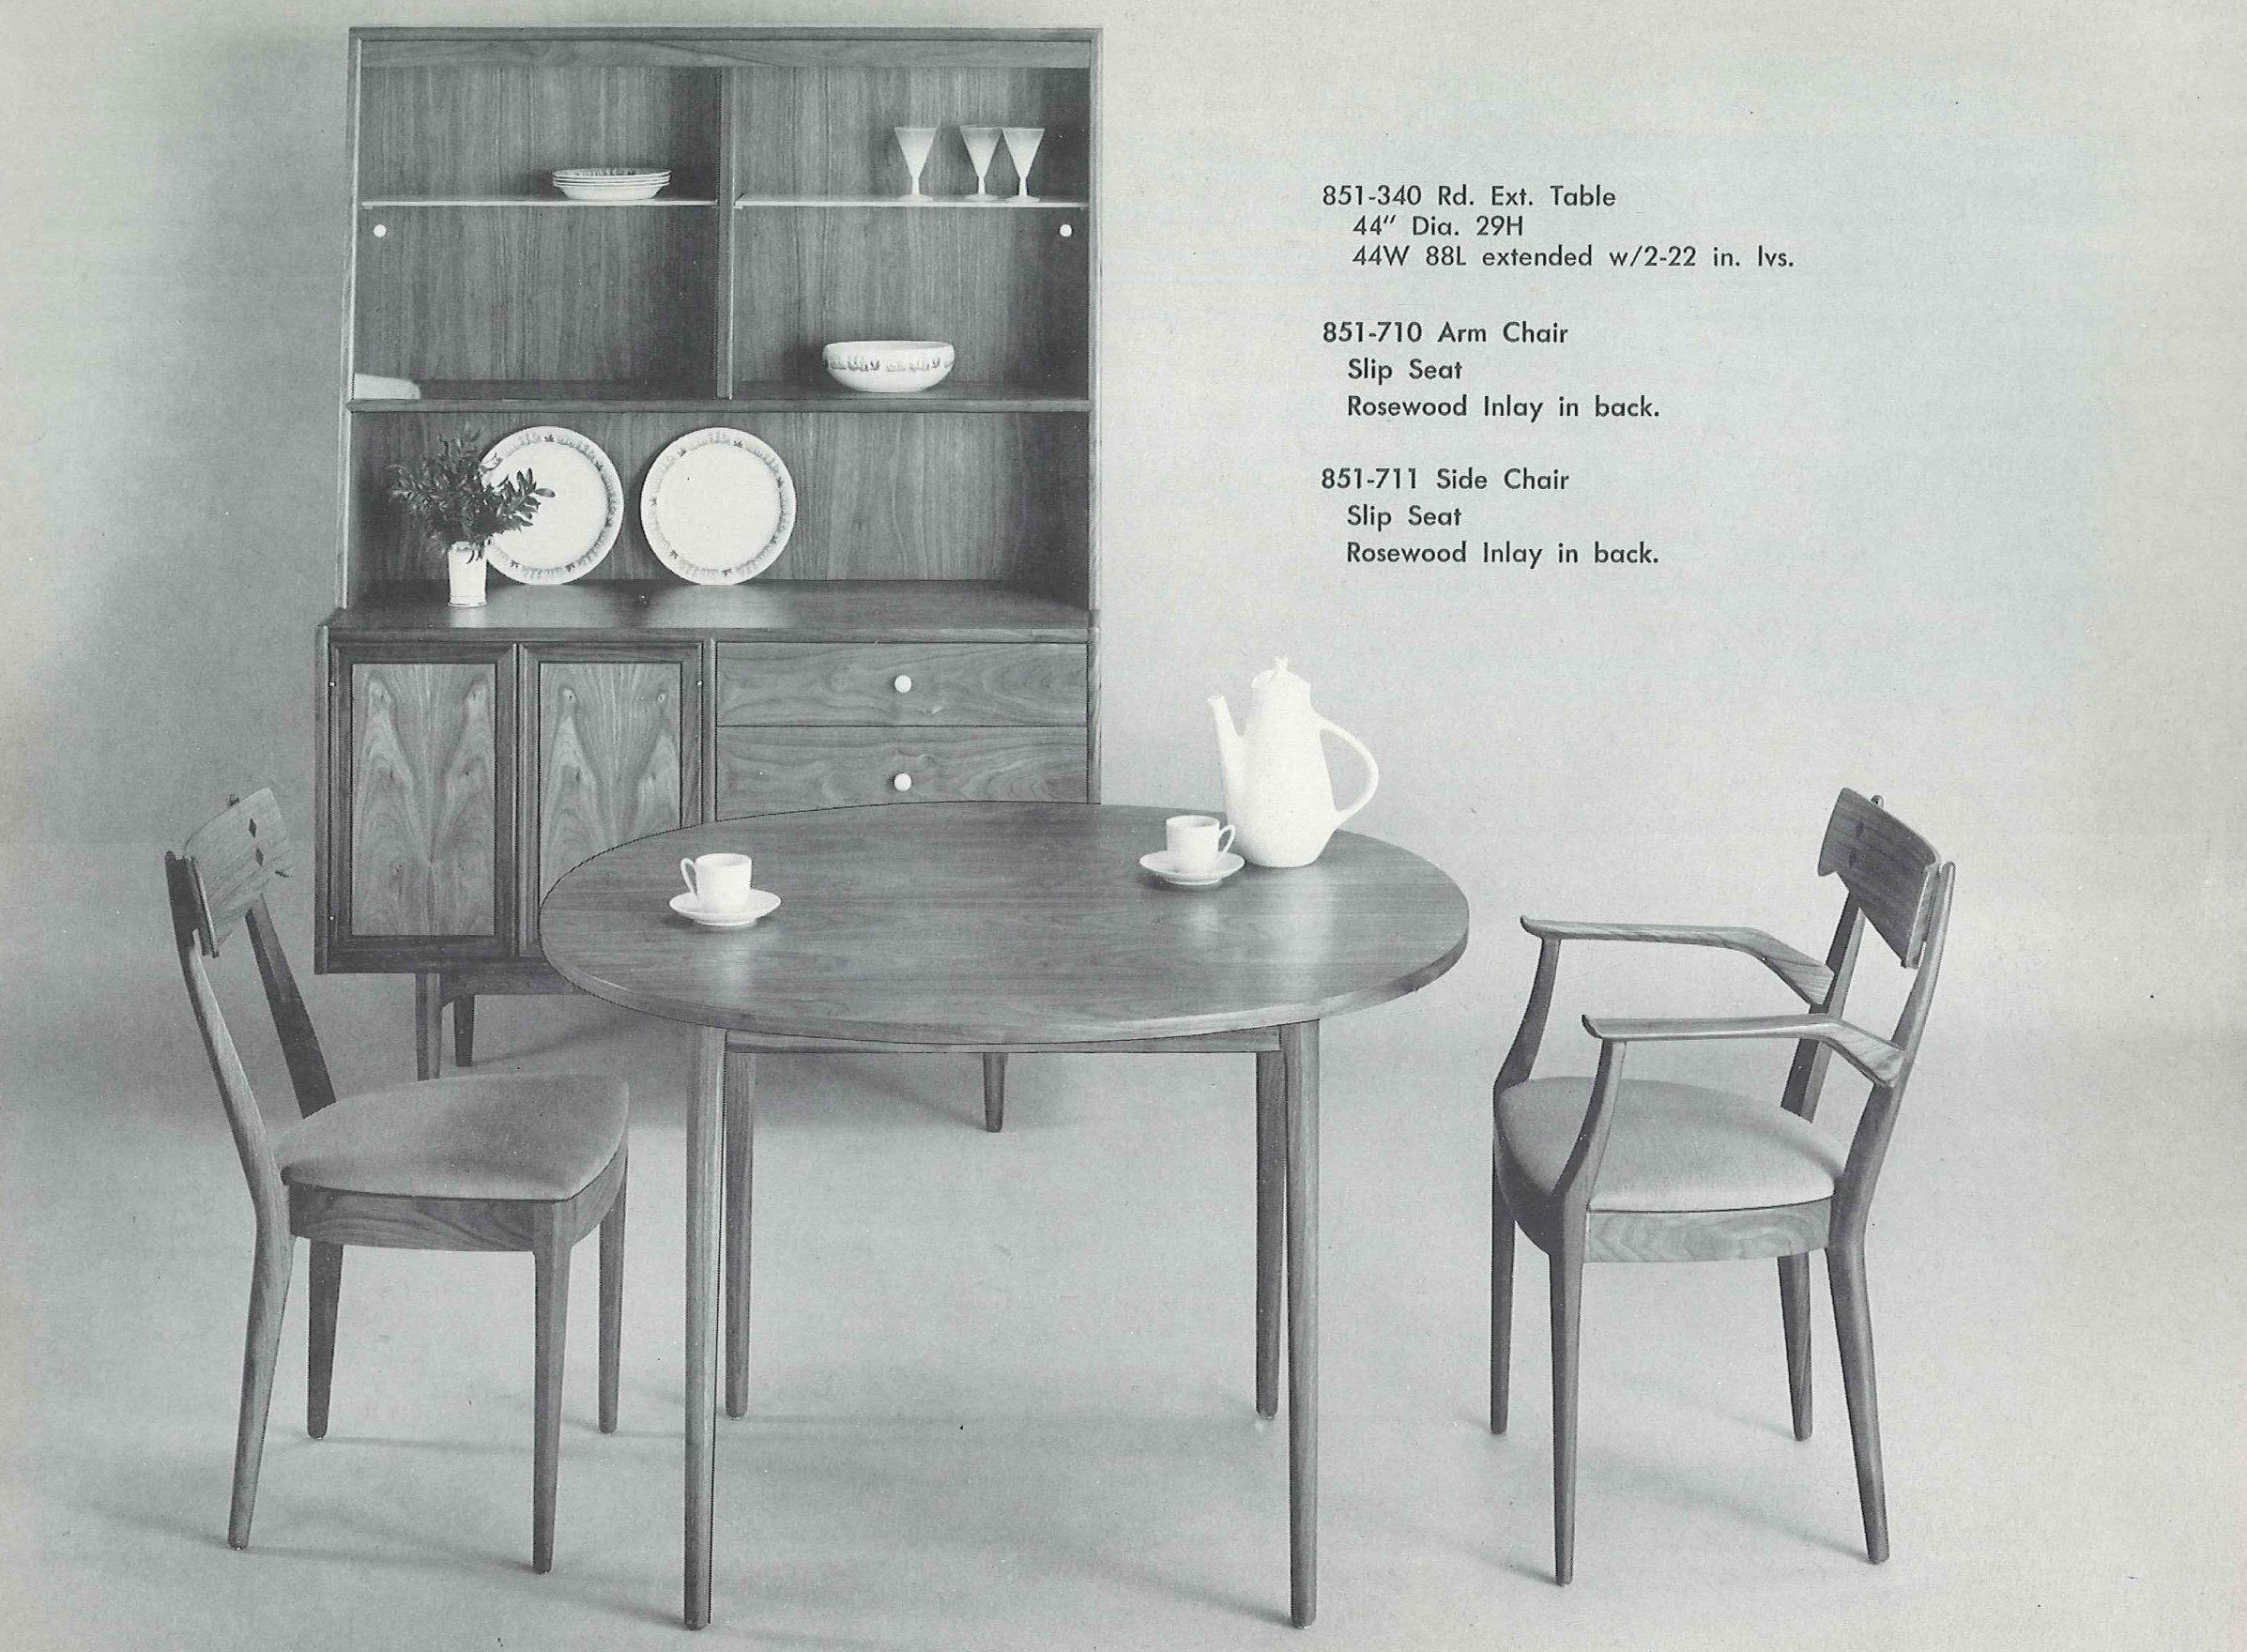 Midcentury Furniture Grandkid Nostalgia Modern Trend Red